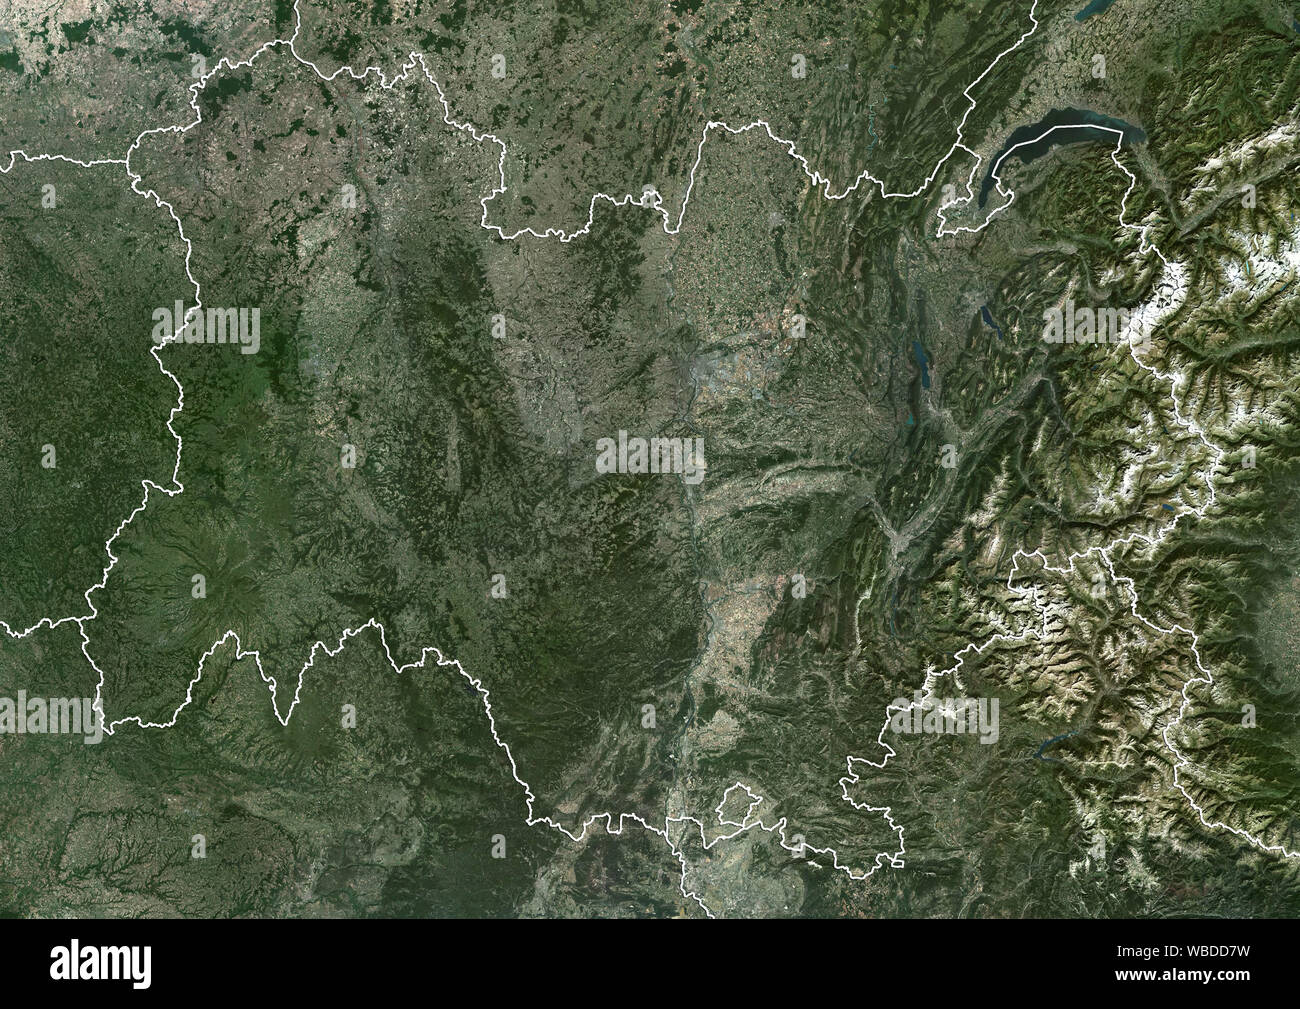 Farbe Satellitenbild der Auvergne-Rhone-Alpes im Südosten von Frankreich (mit administrativen Grenzen). Dieses Bild wurde von der im Jahr 2018 von Sentinel-2 Satelliten erfassten zusammengestellt. Stockfoto